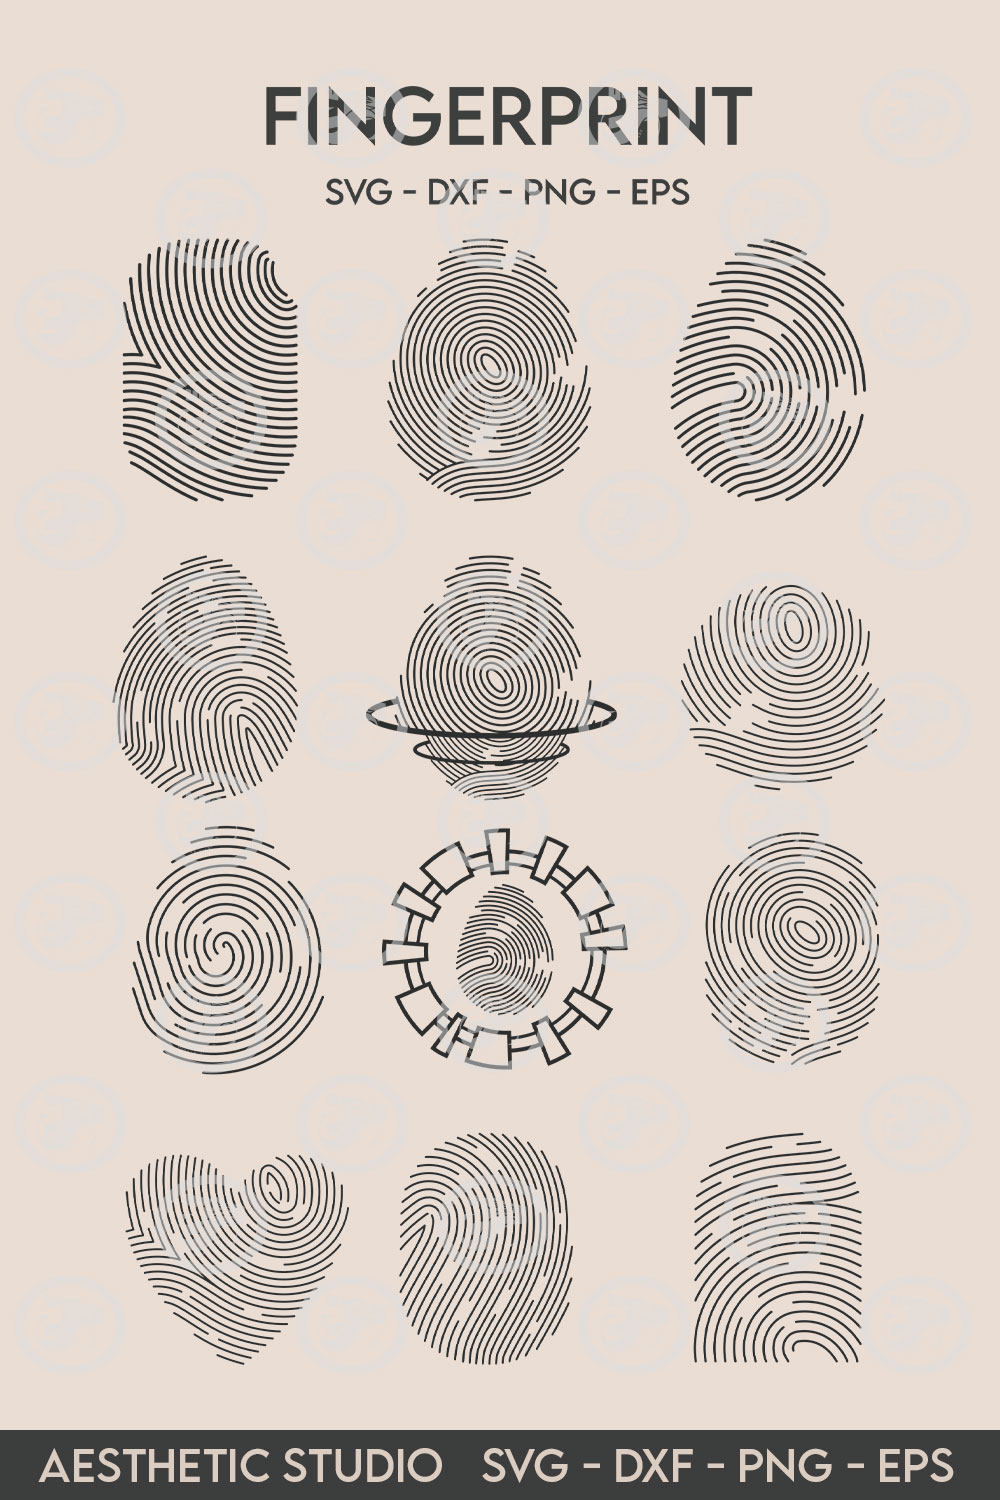 Fingerprint SVG, Finger Print, Thumbprint, Biometric, Heart Fingerprint, Scanner, Vector, Clipart, Eps, Cut file pinterest preview image.